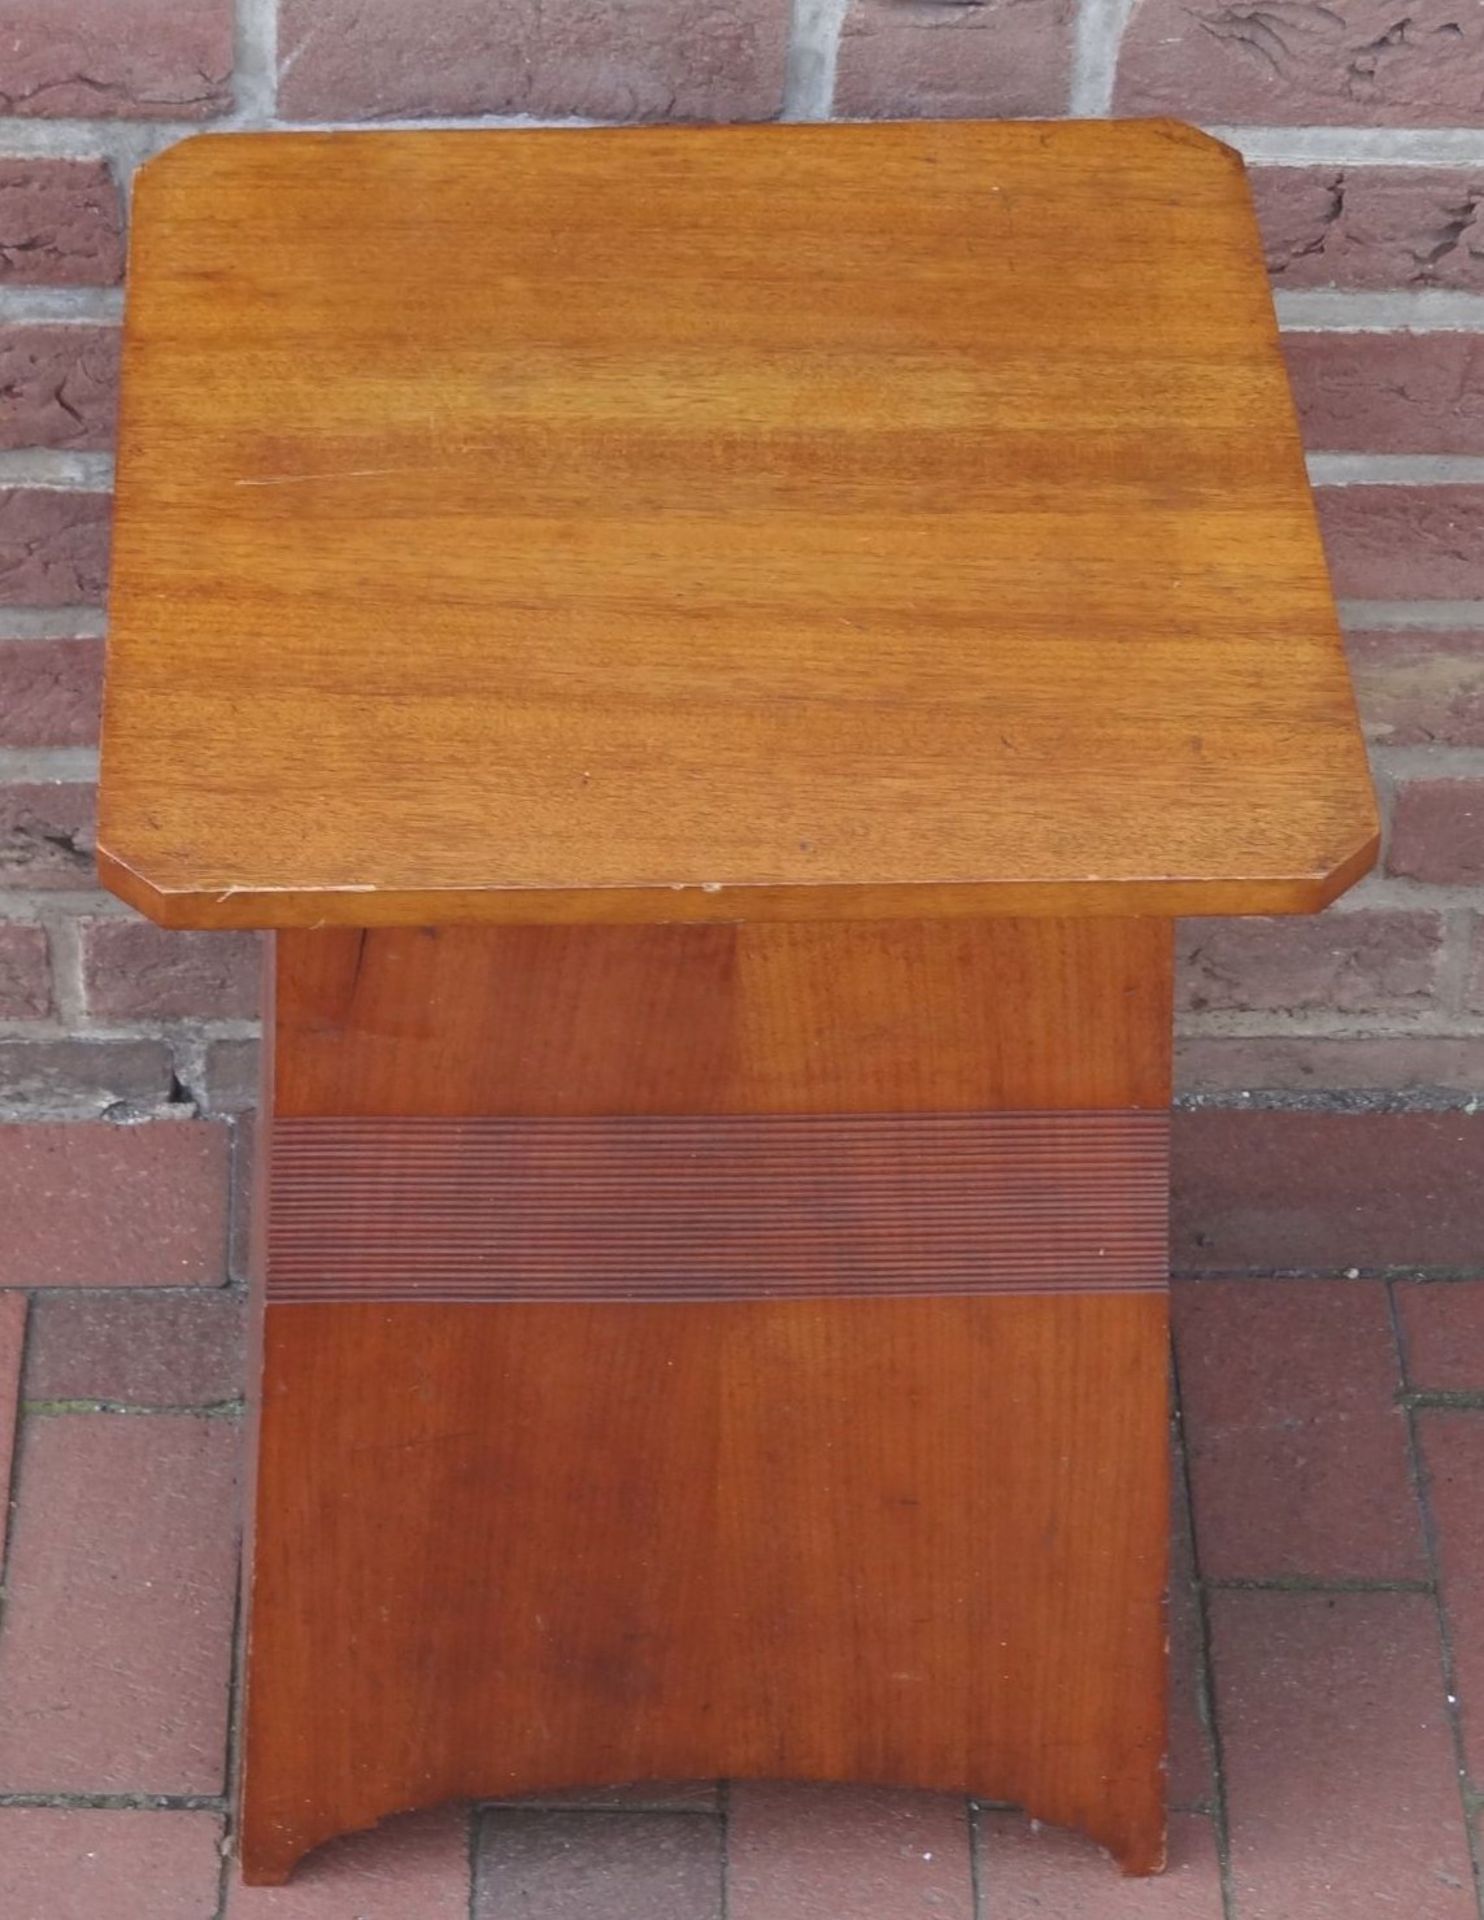 Jugendstil-Tischchen, Entwurf?, H-62 cm, 43x43 cm, Alters-u. Gebrauchsspuren, etwas rissig - Bild 2 aus 4